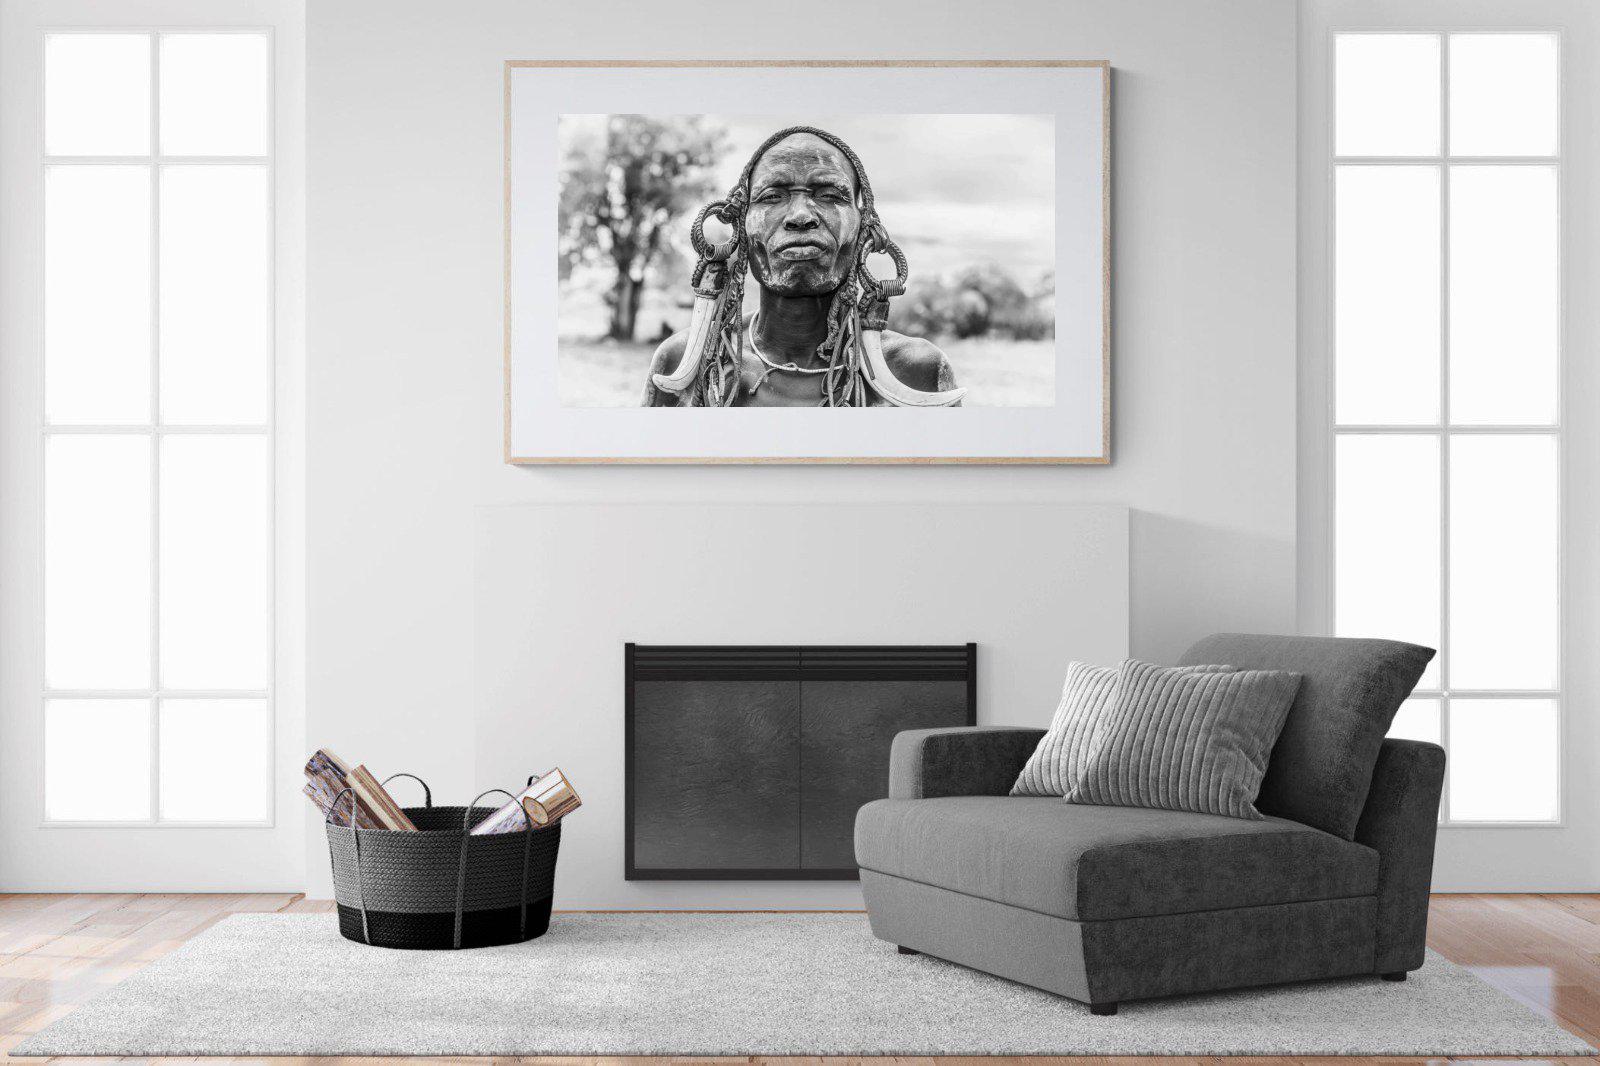 Tribesman-Wall_Art-150 x 100cm-Framed Print-Wood-Pixalot